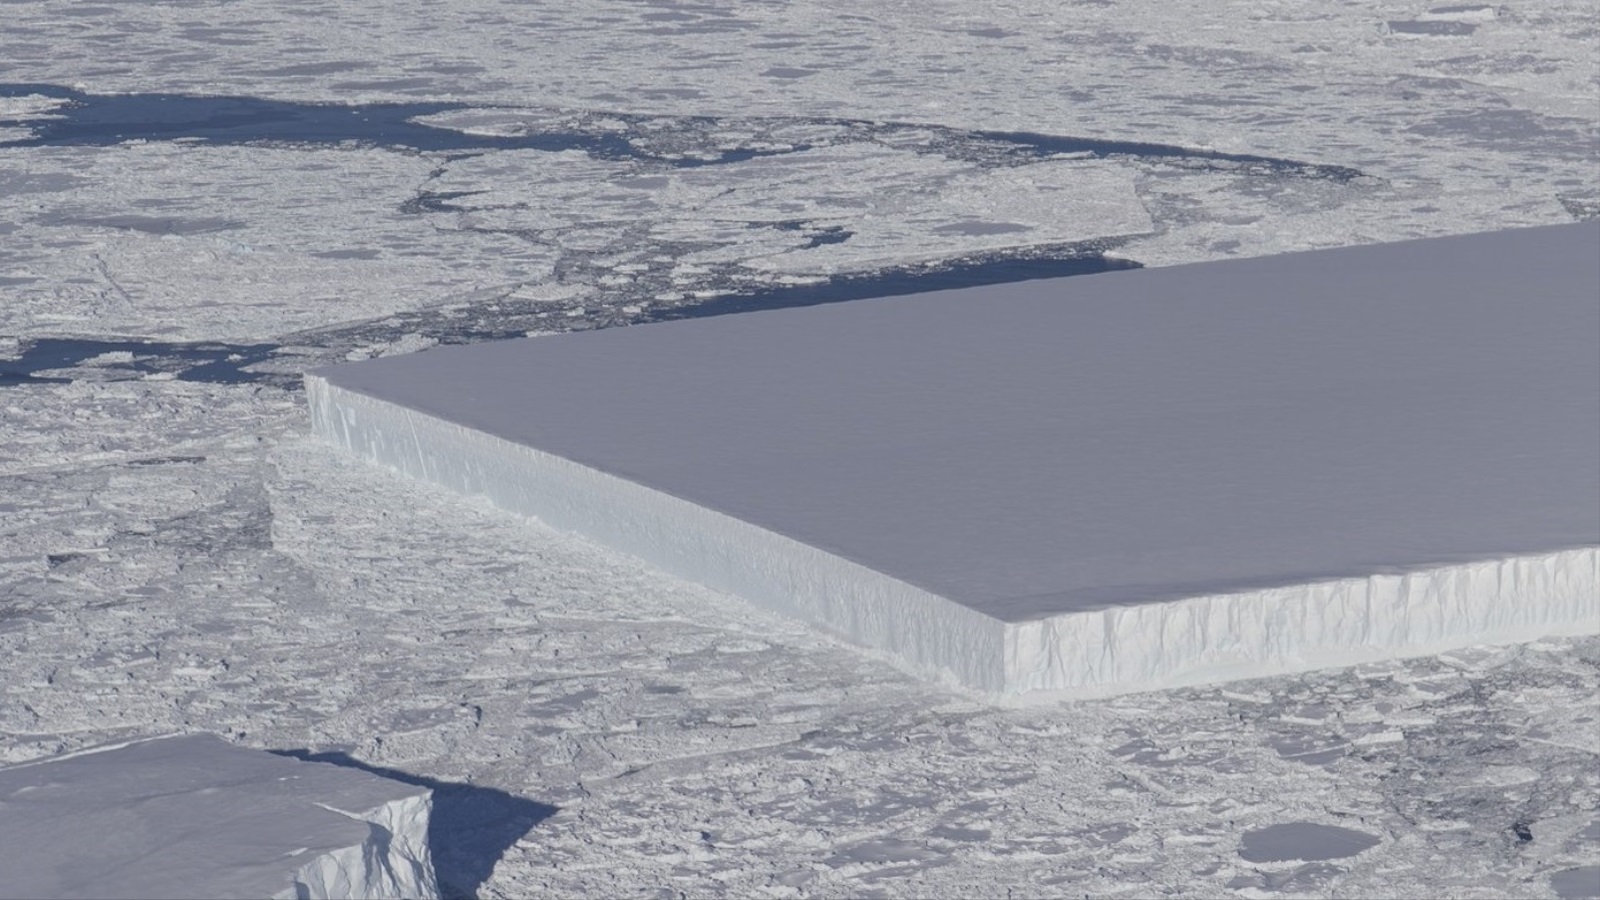 جبل جليدي مستطيل الشكل ذو سطح مستو تماما بشكل مثير للدهشة من  بين مجموعة جبال جليدية اكتشفت الشهر الماضي (مشروع ناسا آيس بريدج)